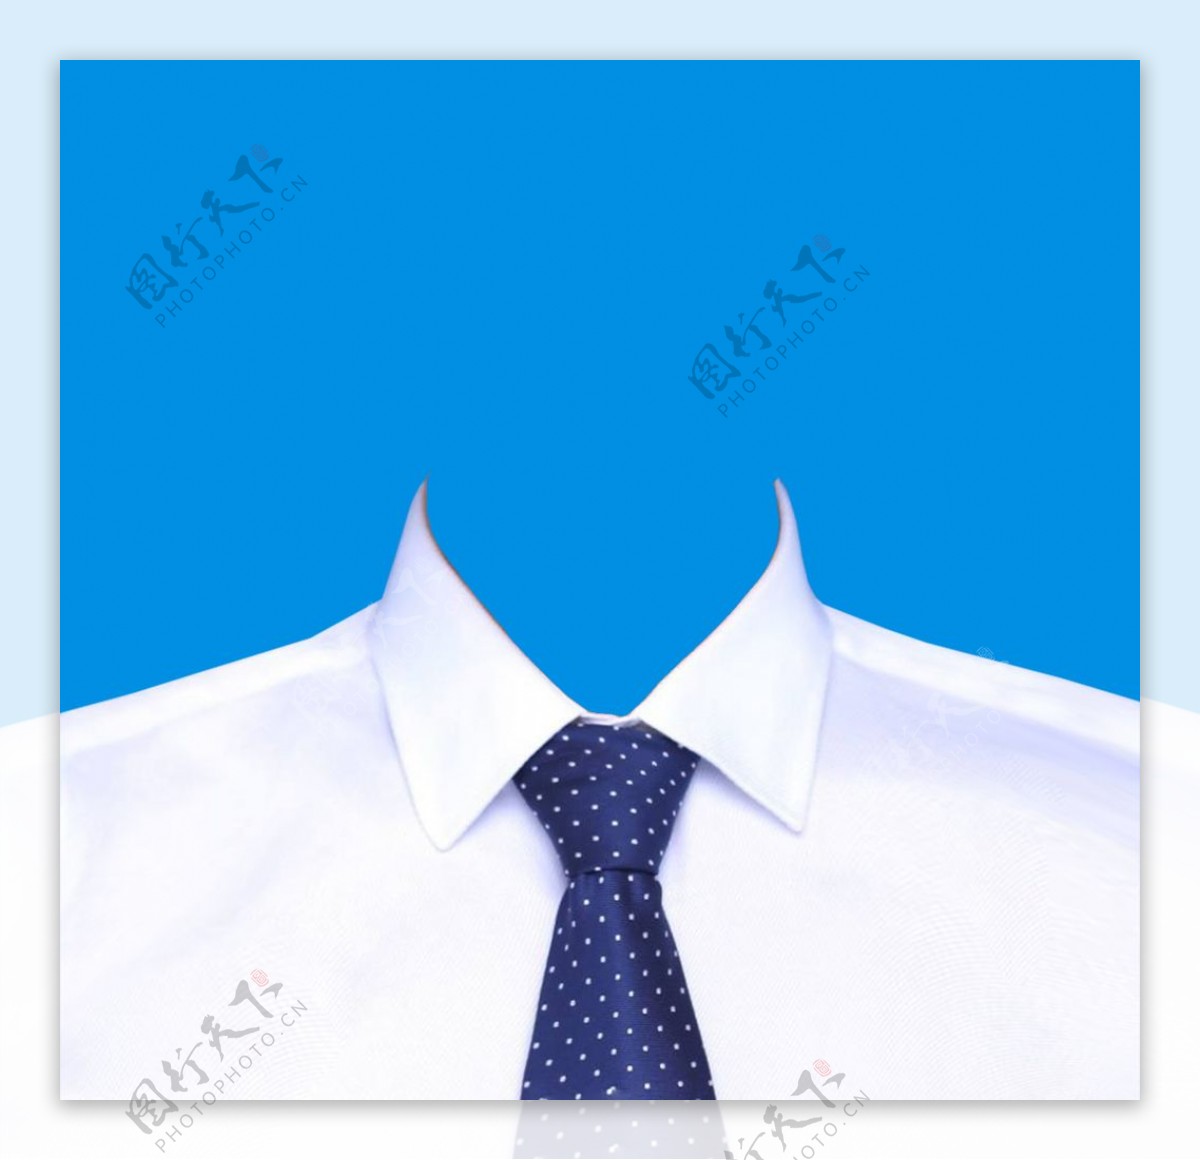 男装领带蓝底证件照图片